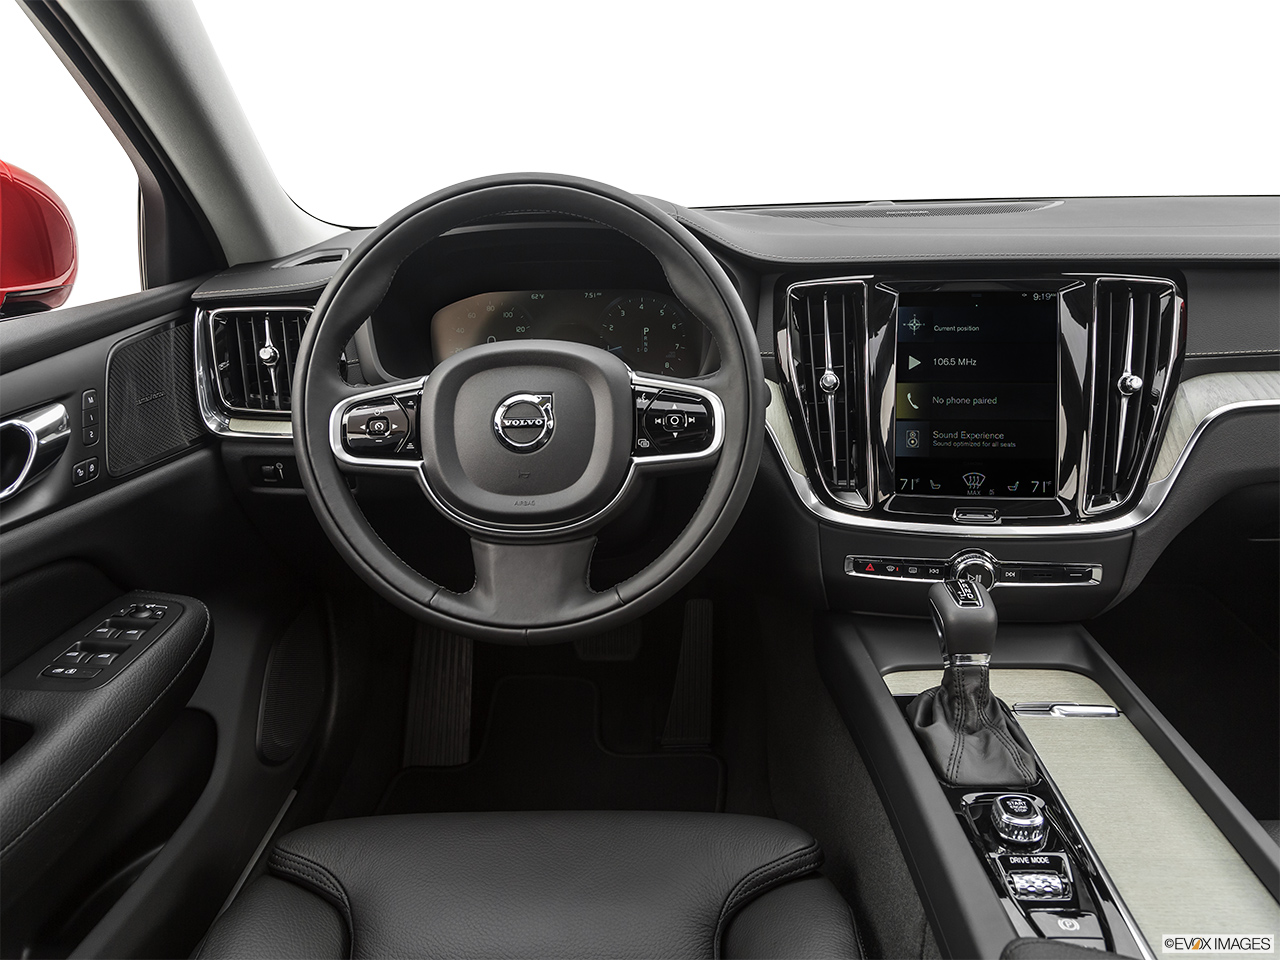 2020 Volvo S60 T5 Inscription Steering wheel/Center Console. 